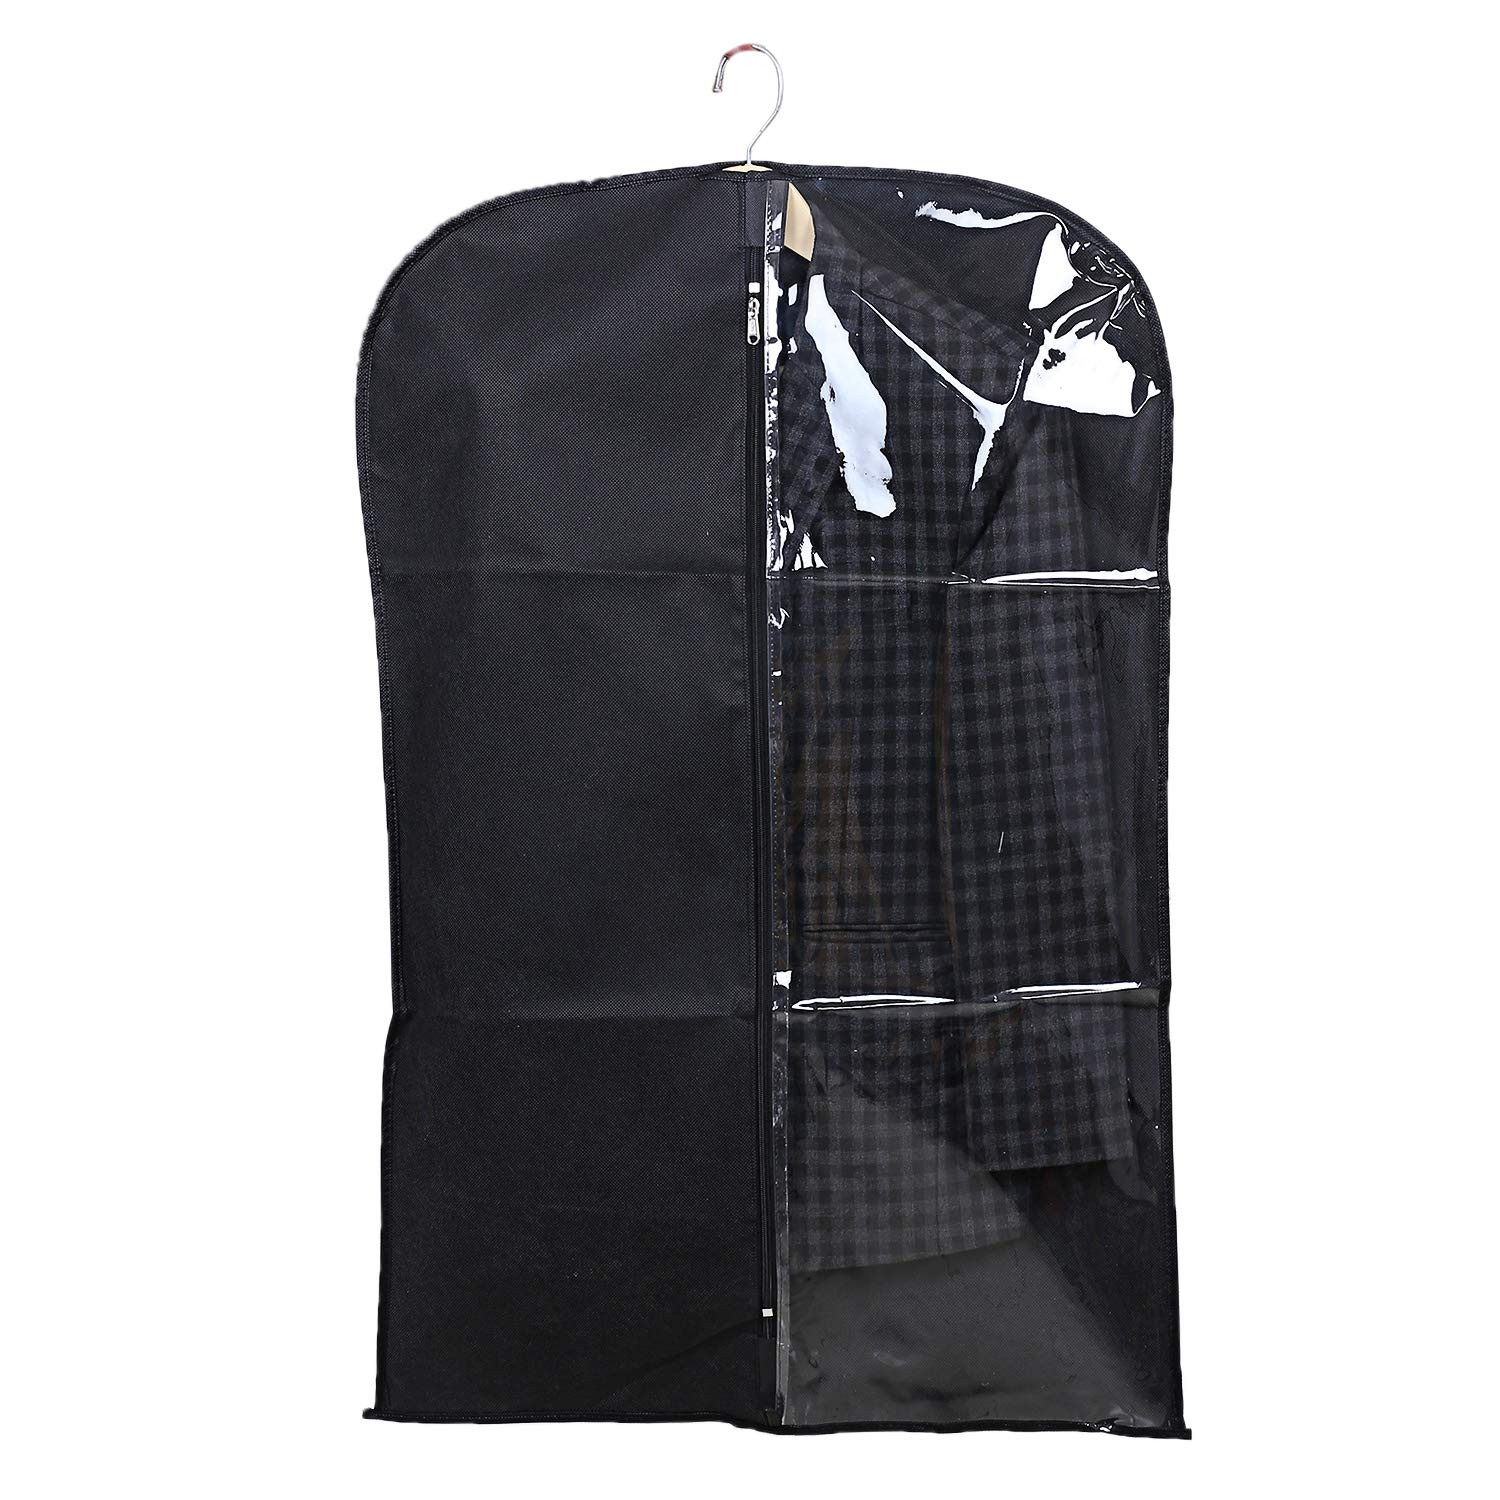 Kuber Industries Half Transparent Non Woven Men's Coat Blazer Suit Cover (Grey & Black)  -CTKTC41477